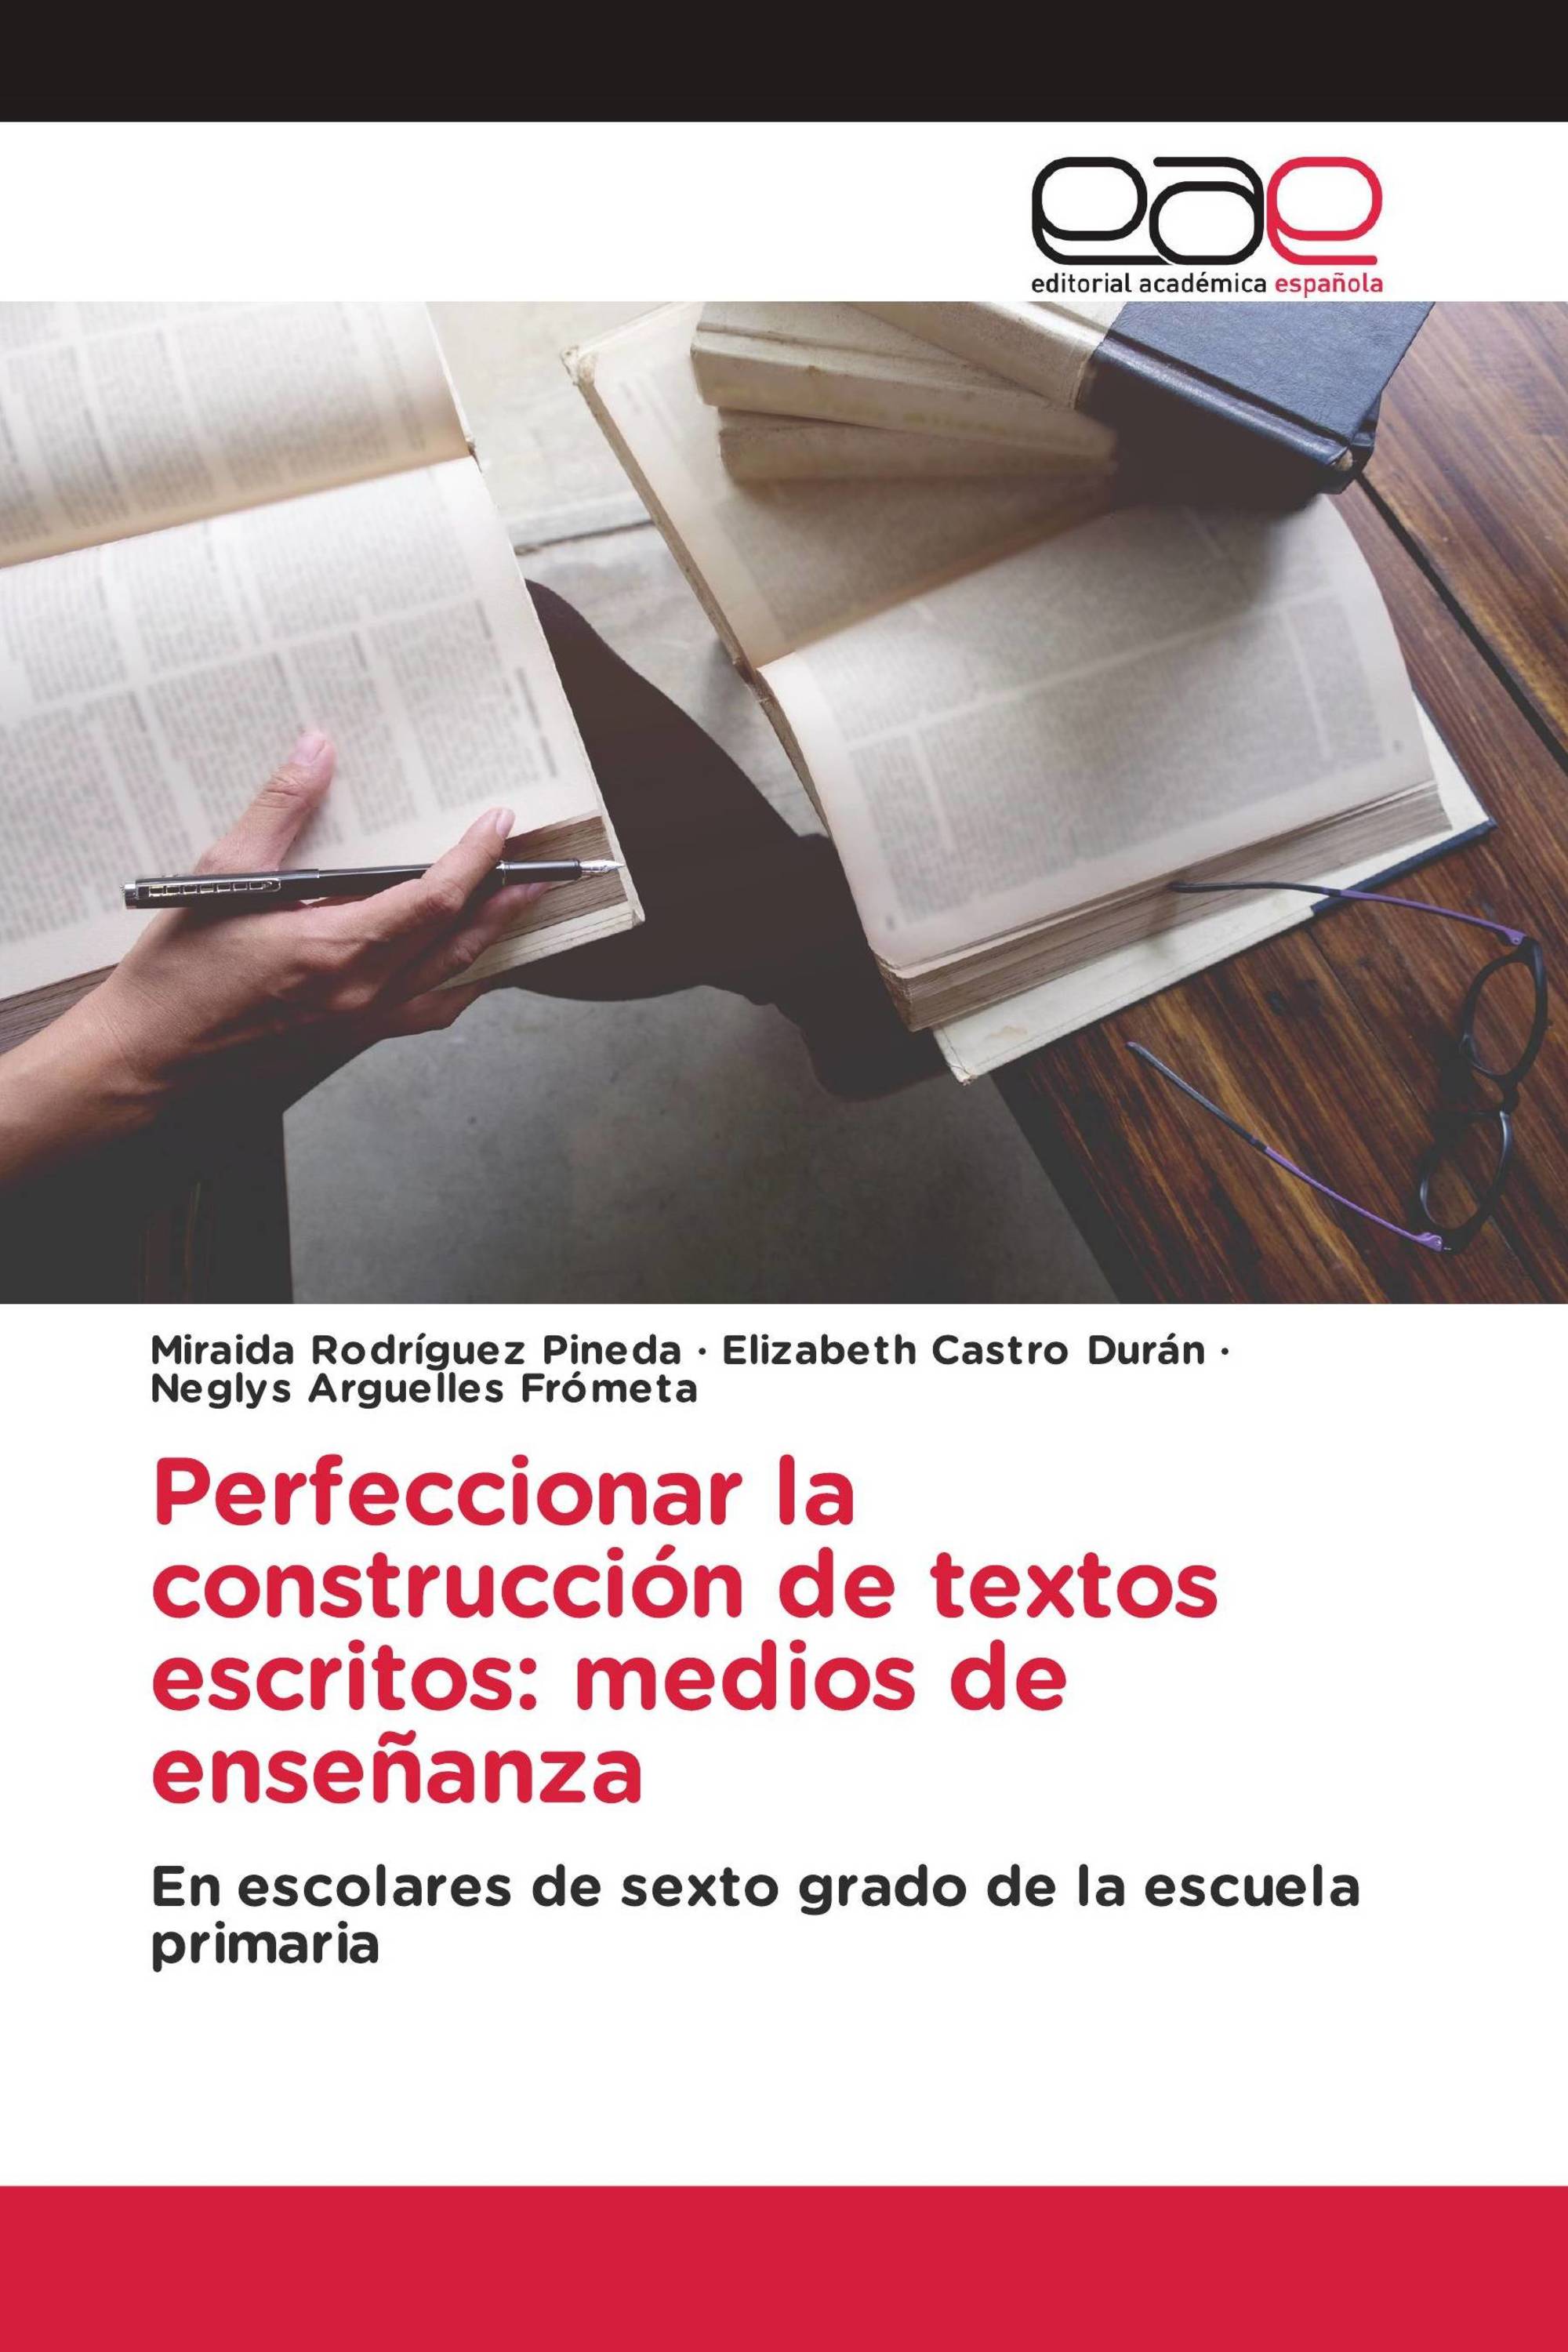 Perfeccionar la construcción de textos escritos: medios de enseñanza